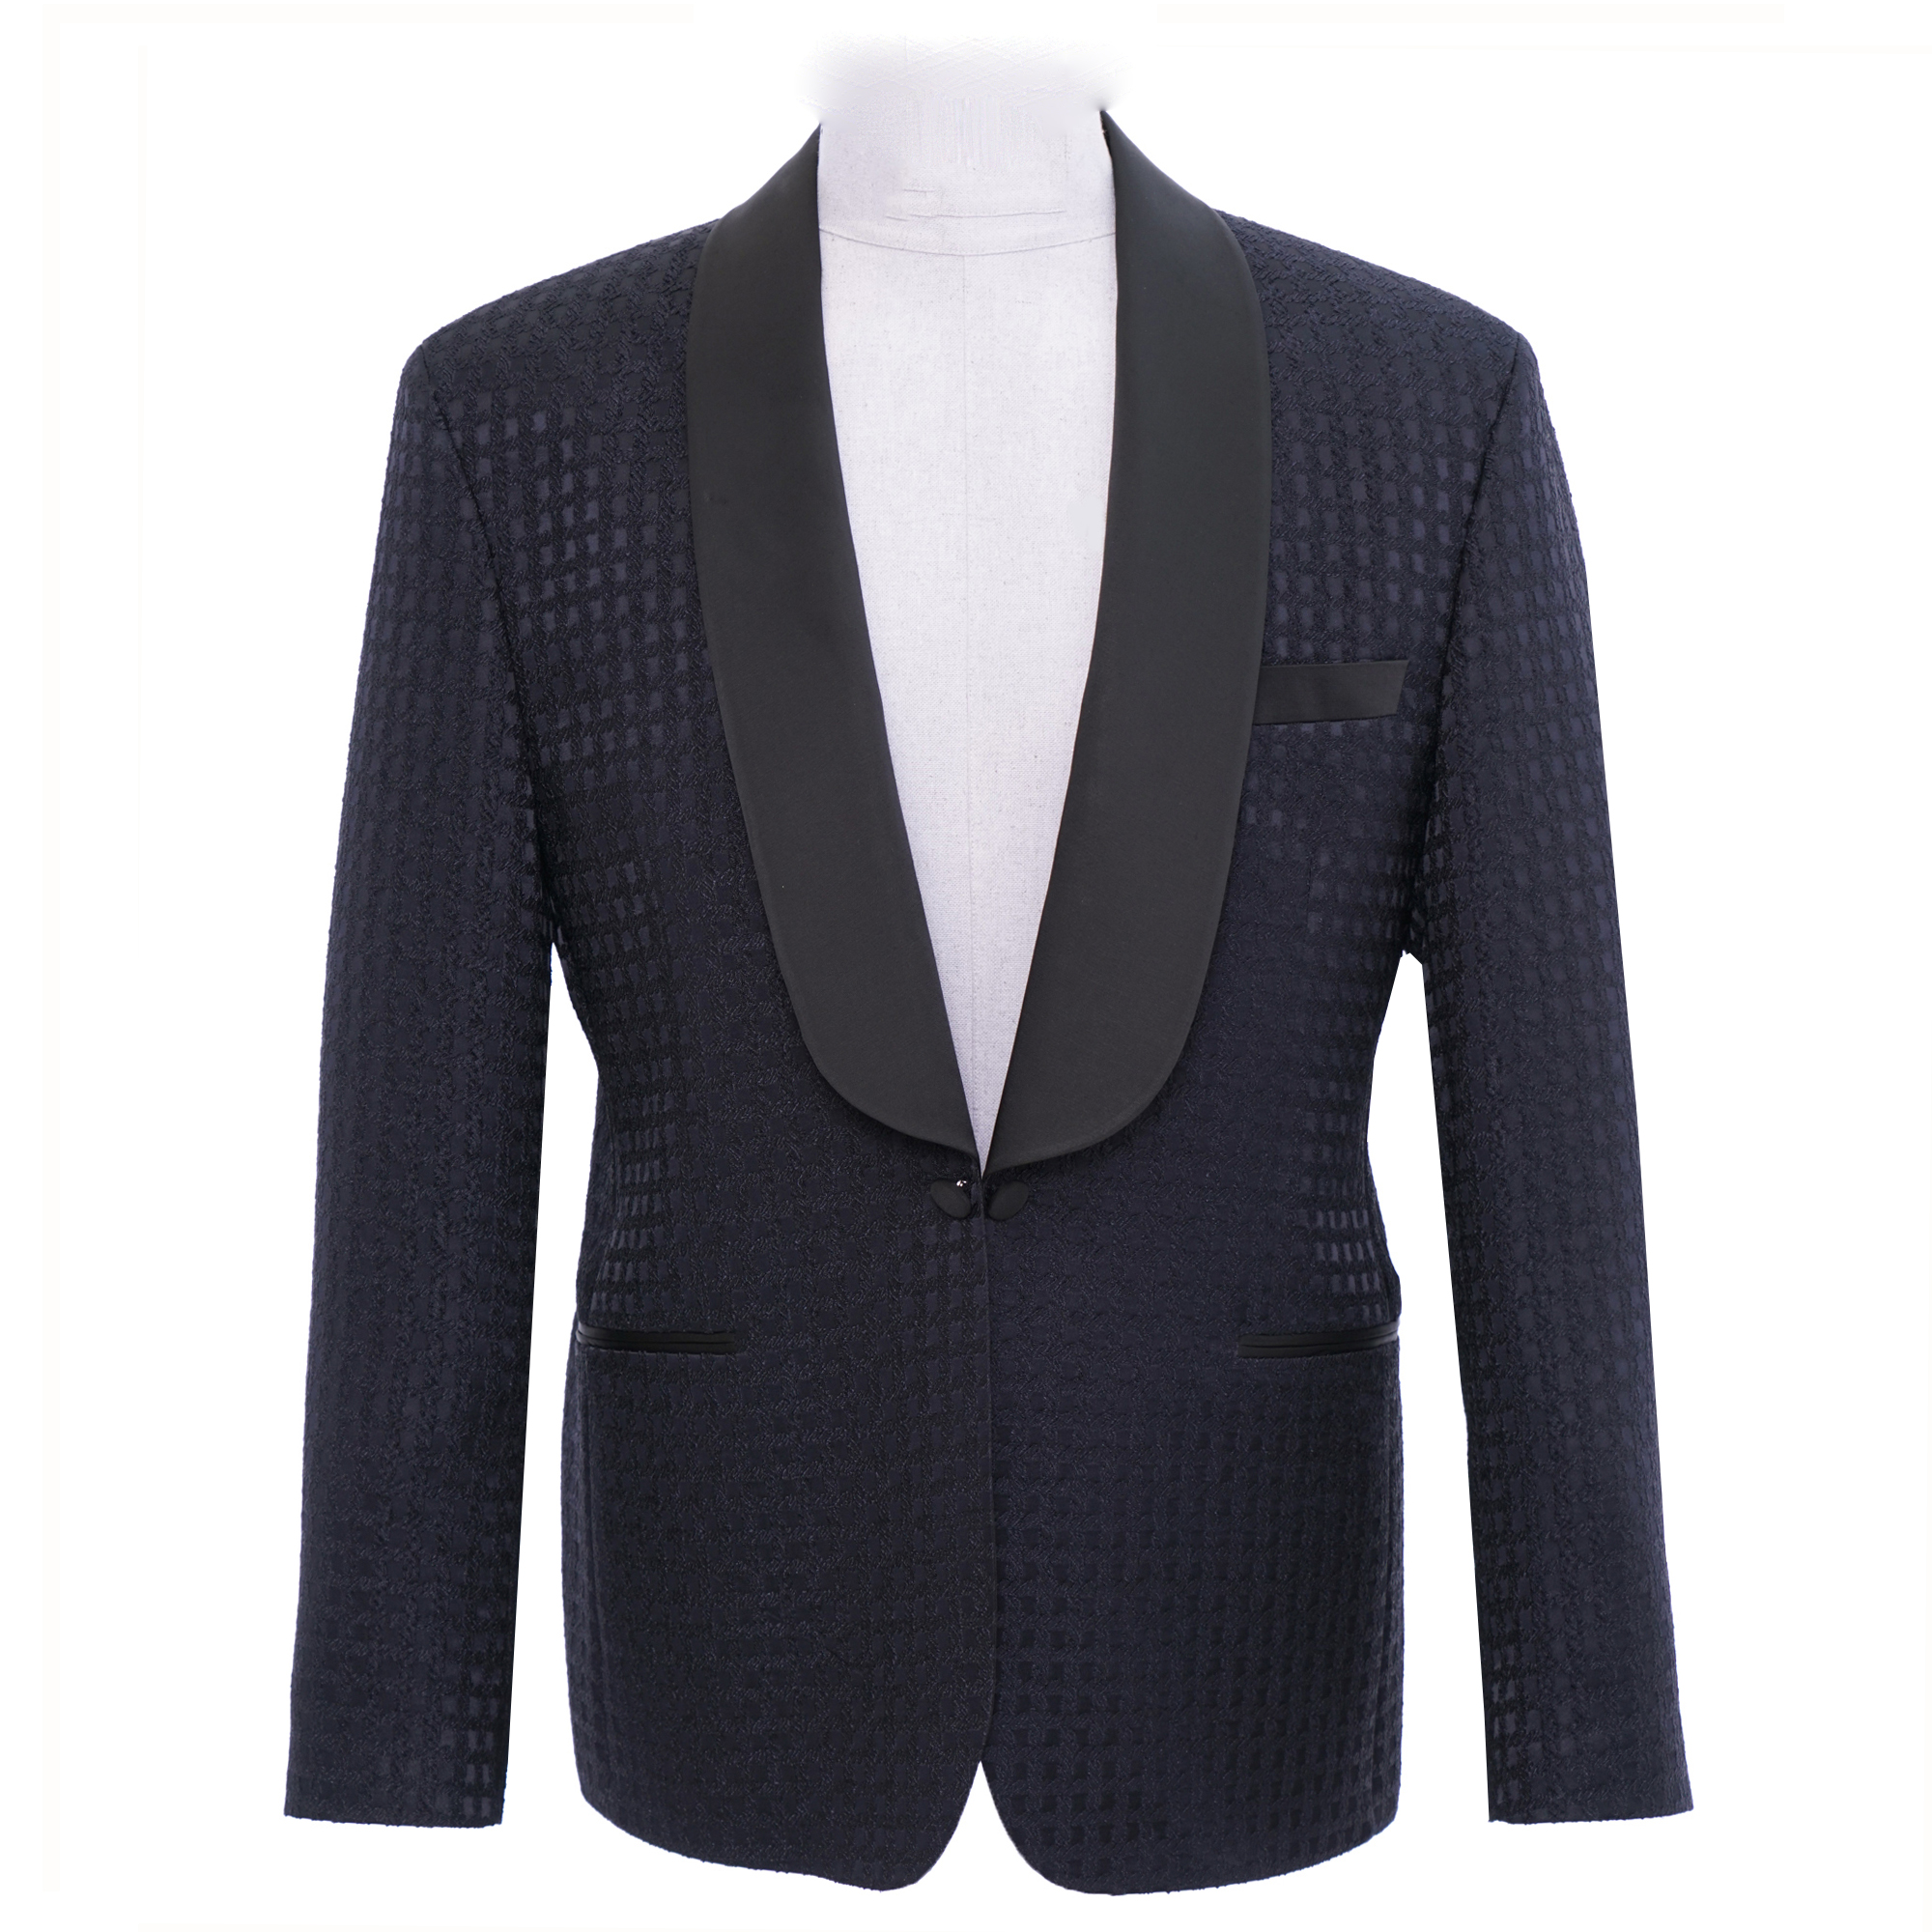 Blue Square Tuxedo Jacket - Esclot Tailoring London